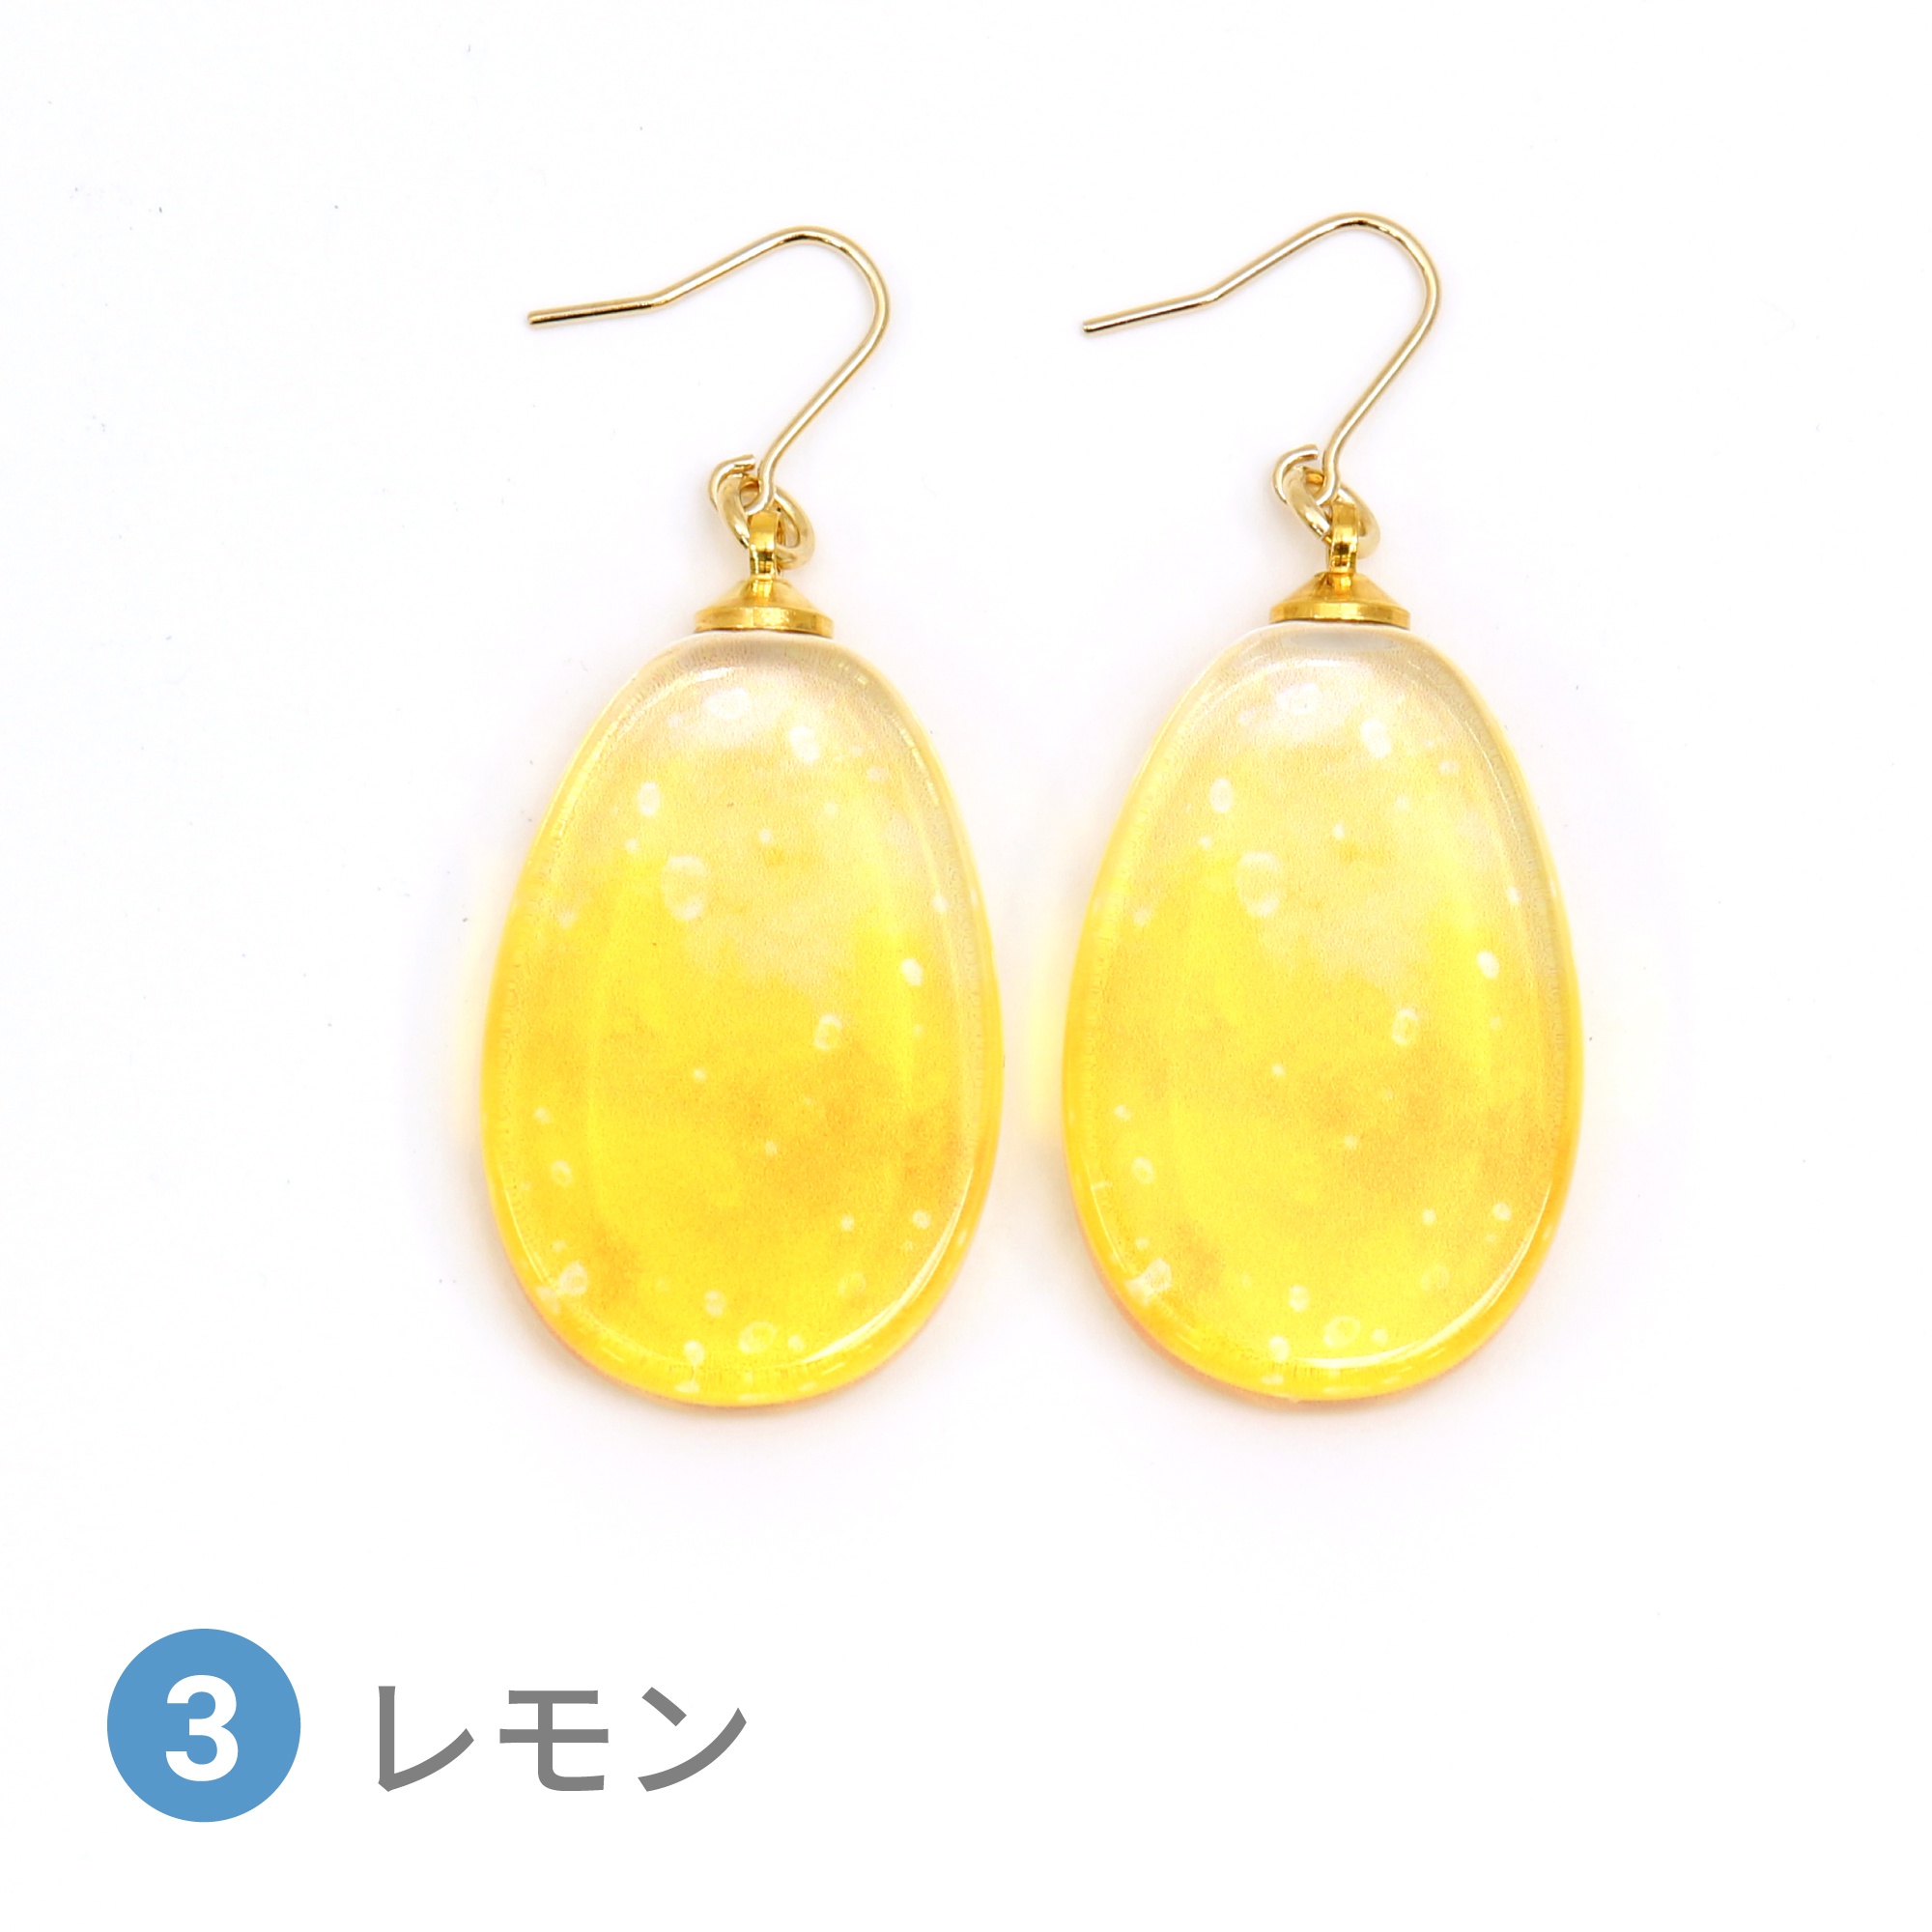 Glass accessories Pierced Earring SODA lemon drop shape